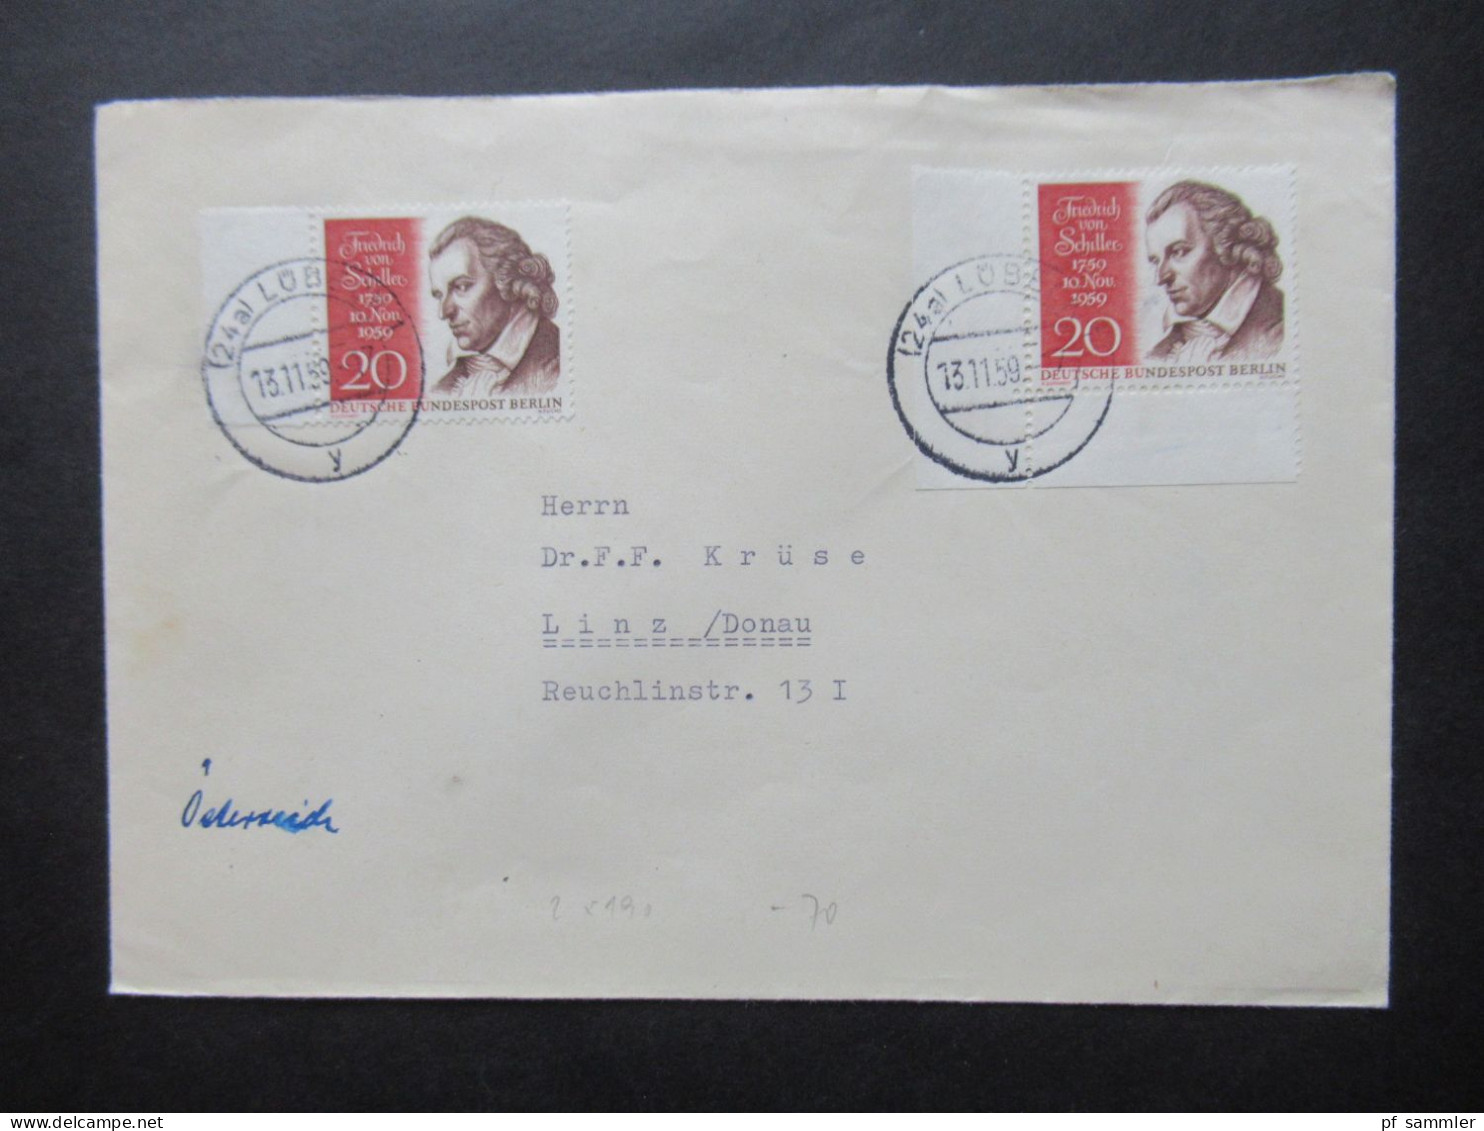 BRD / Berlin 1956 - 1960er Belegeposten 32 Stk. nur EF / MeF mit Randstücken / Eckränder! Auslandsbriefe nach Österreich